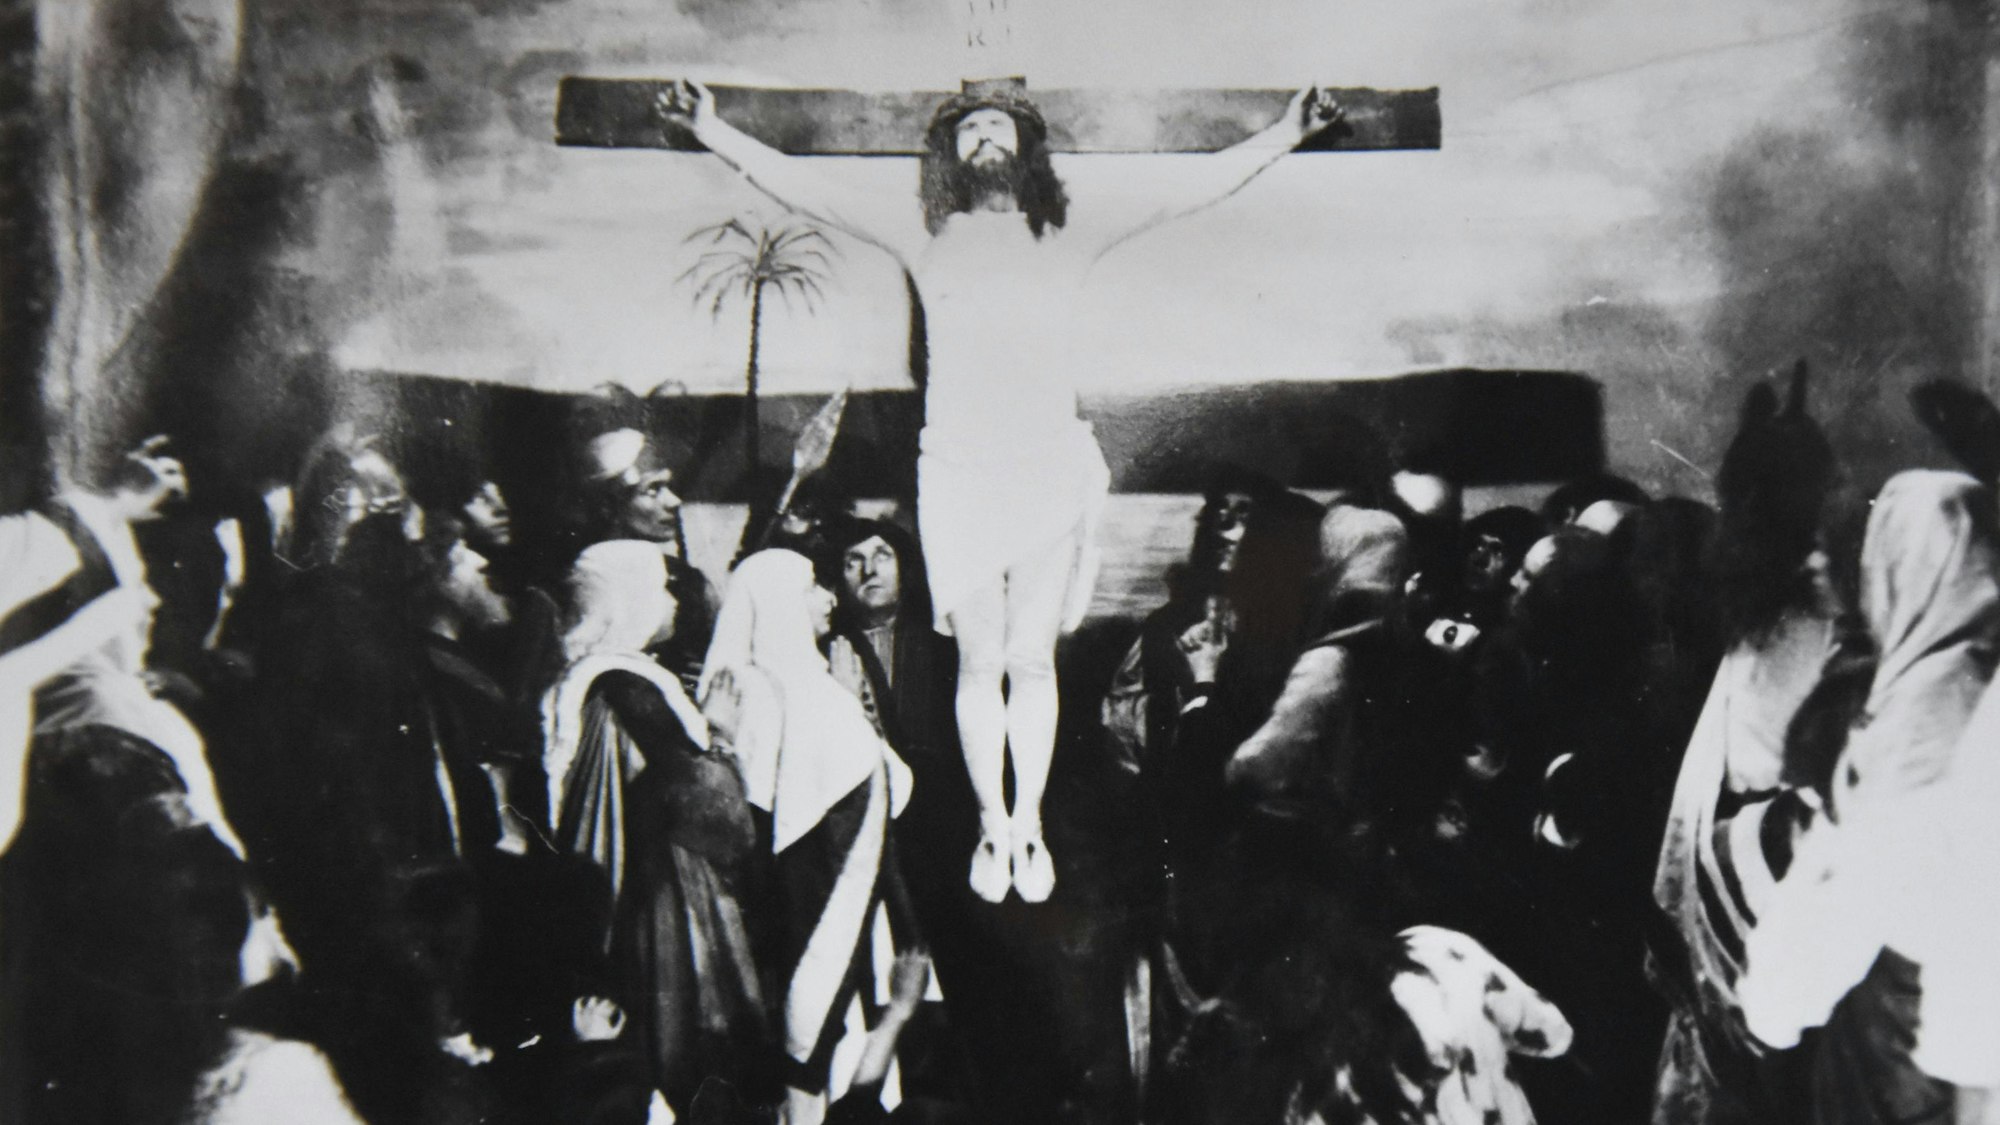 Eine alte Schwarz-Weiß-Fotografie zeigt die Kreuzigung Jesu in einem Passionsspiel.